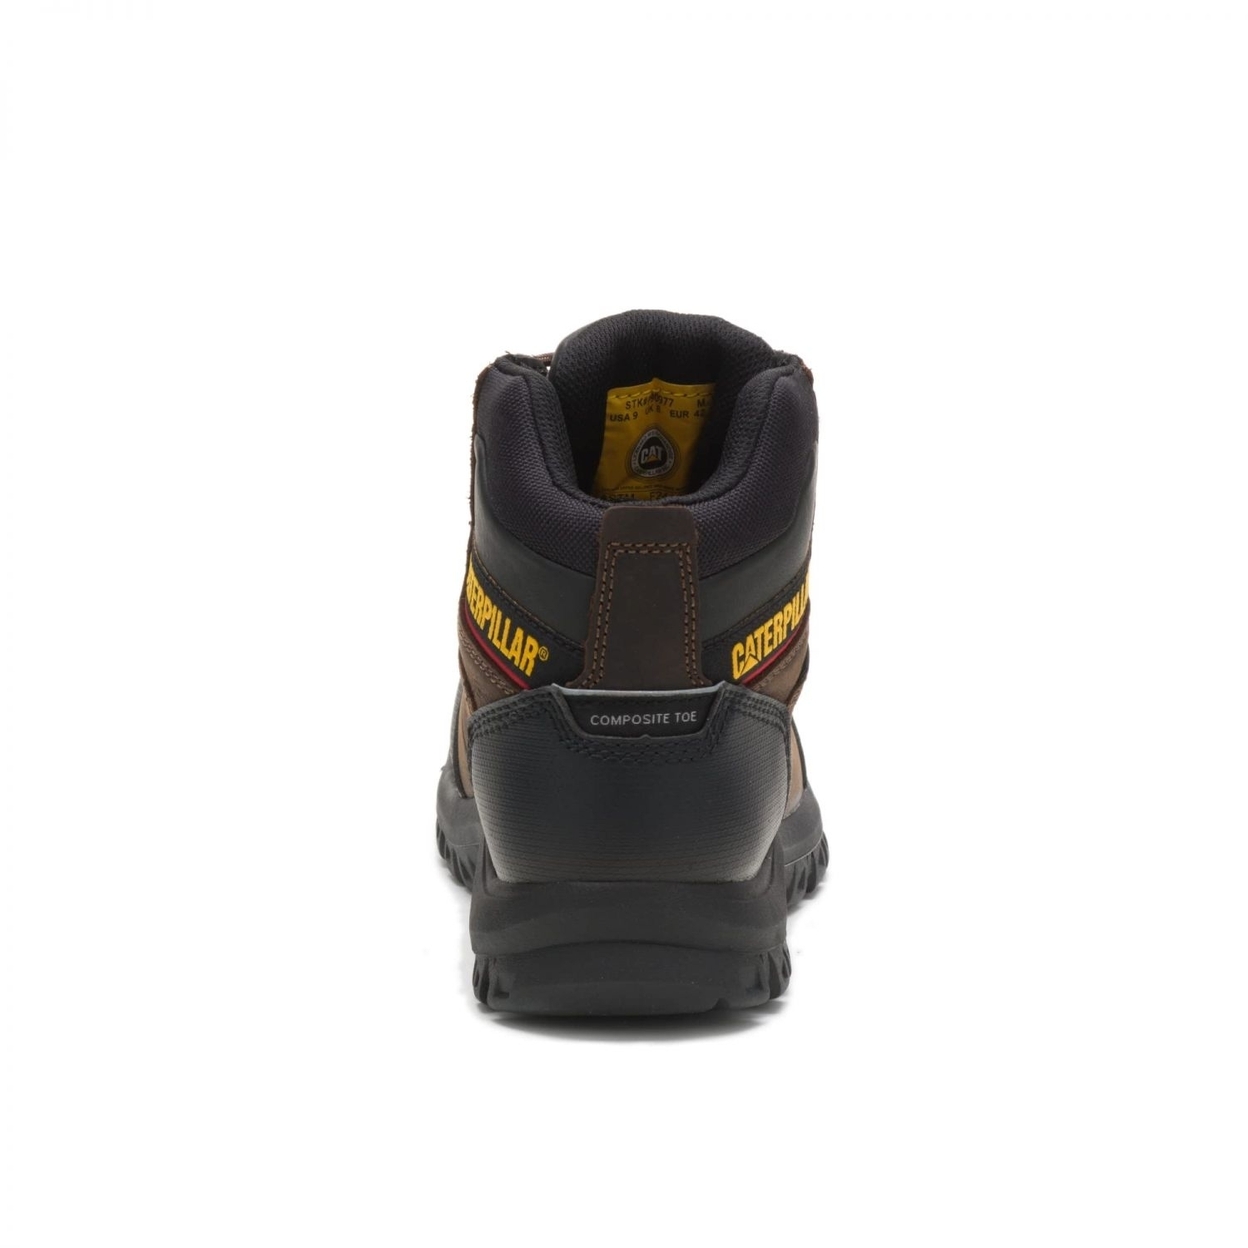 Cat Footwear Men's Resorption Composite Toe Waterproof Industrial Boot BLACK - BLACK, 12-M